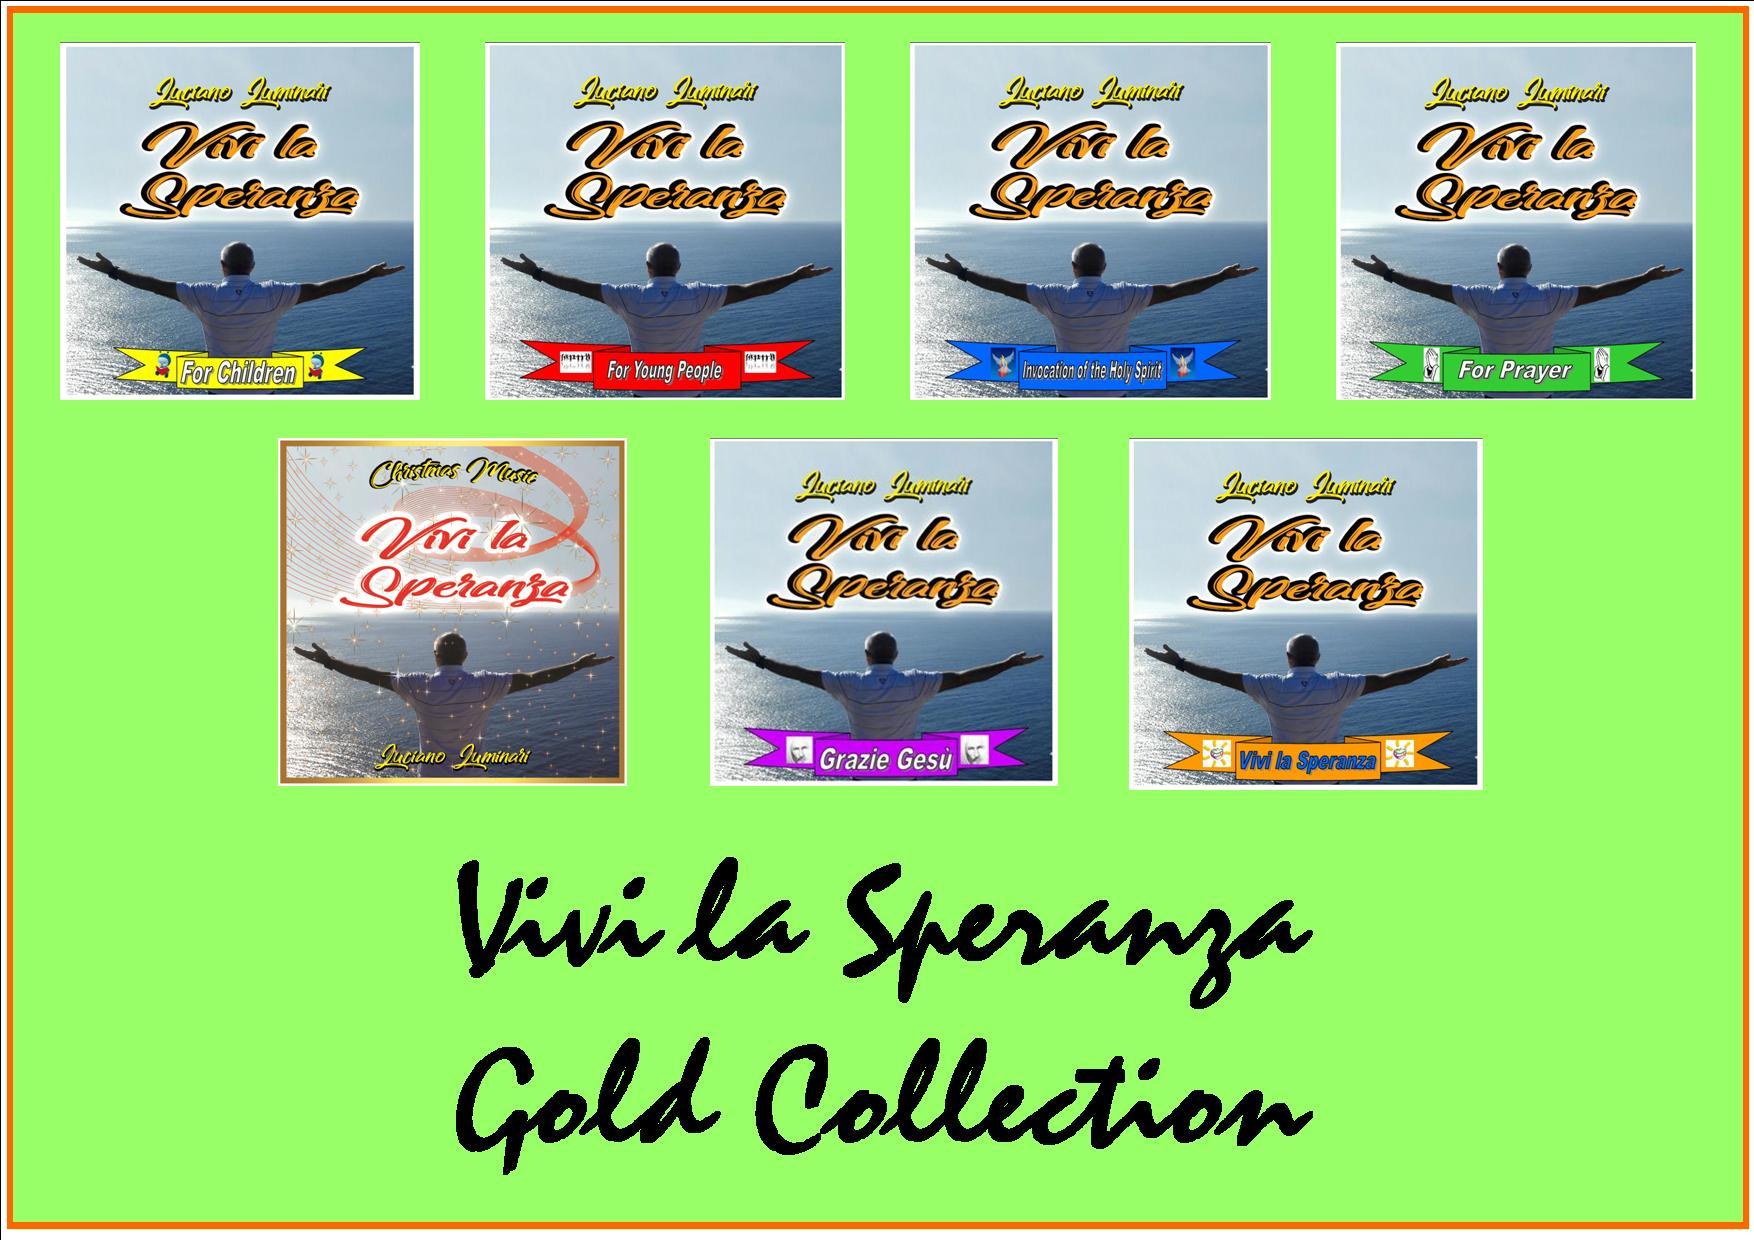 VIVI LA SPERANZA-GOLD COLLECTION